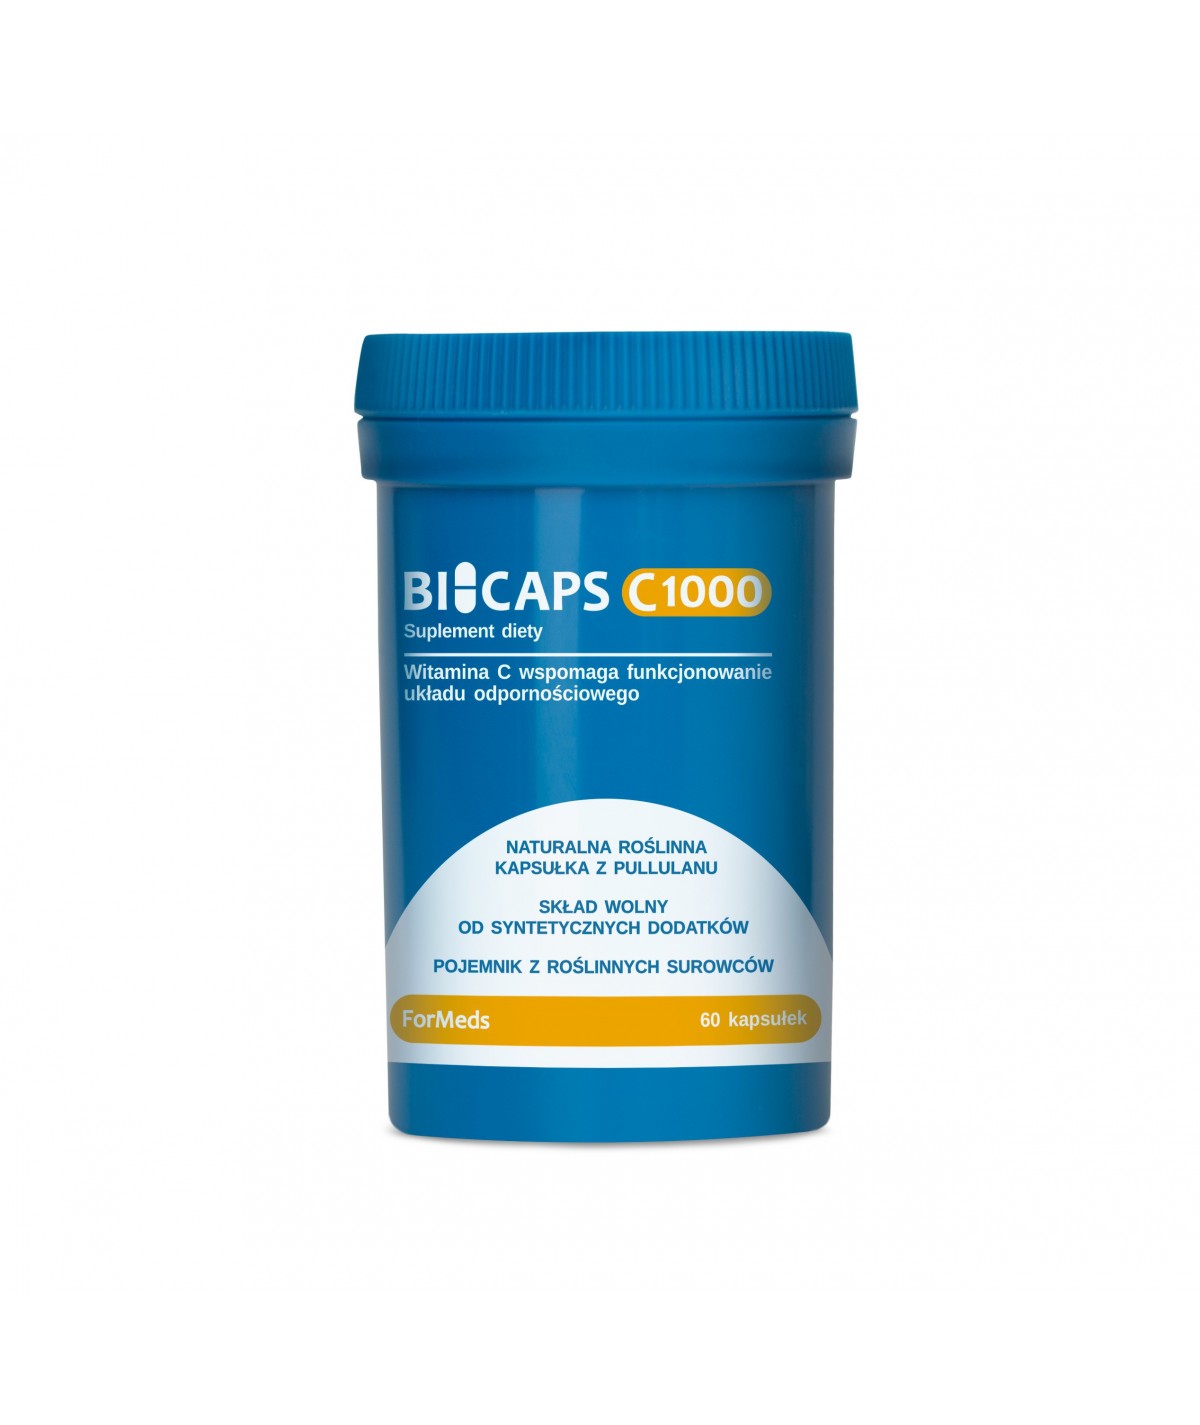 Bicaps C1000|Formeds